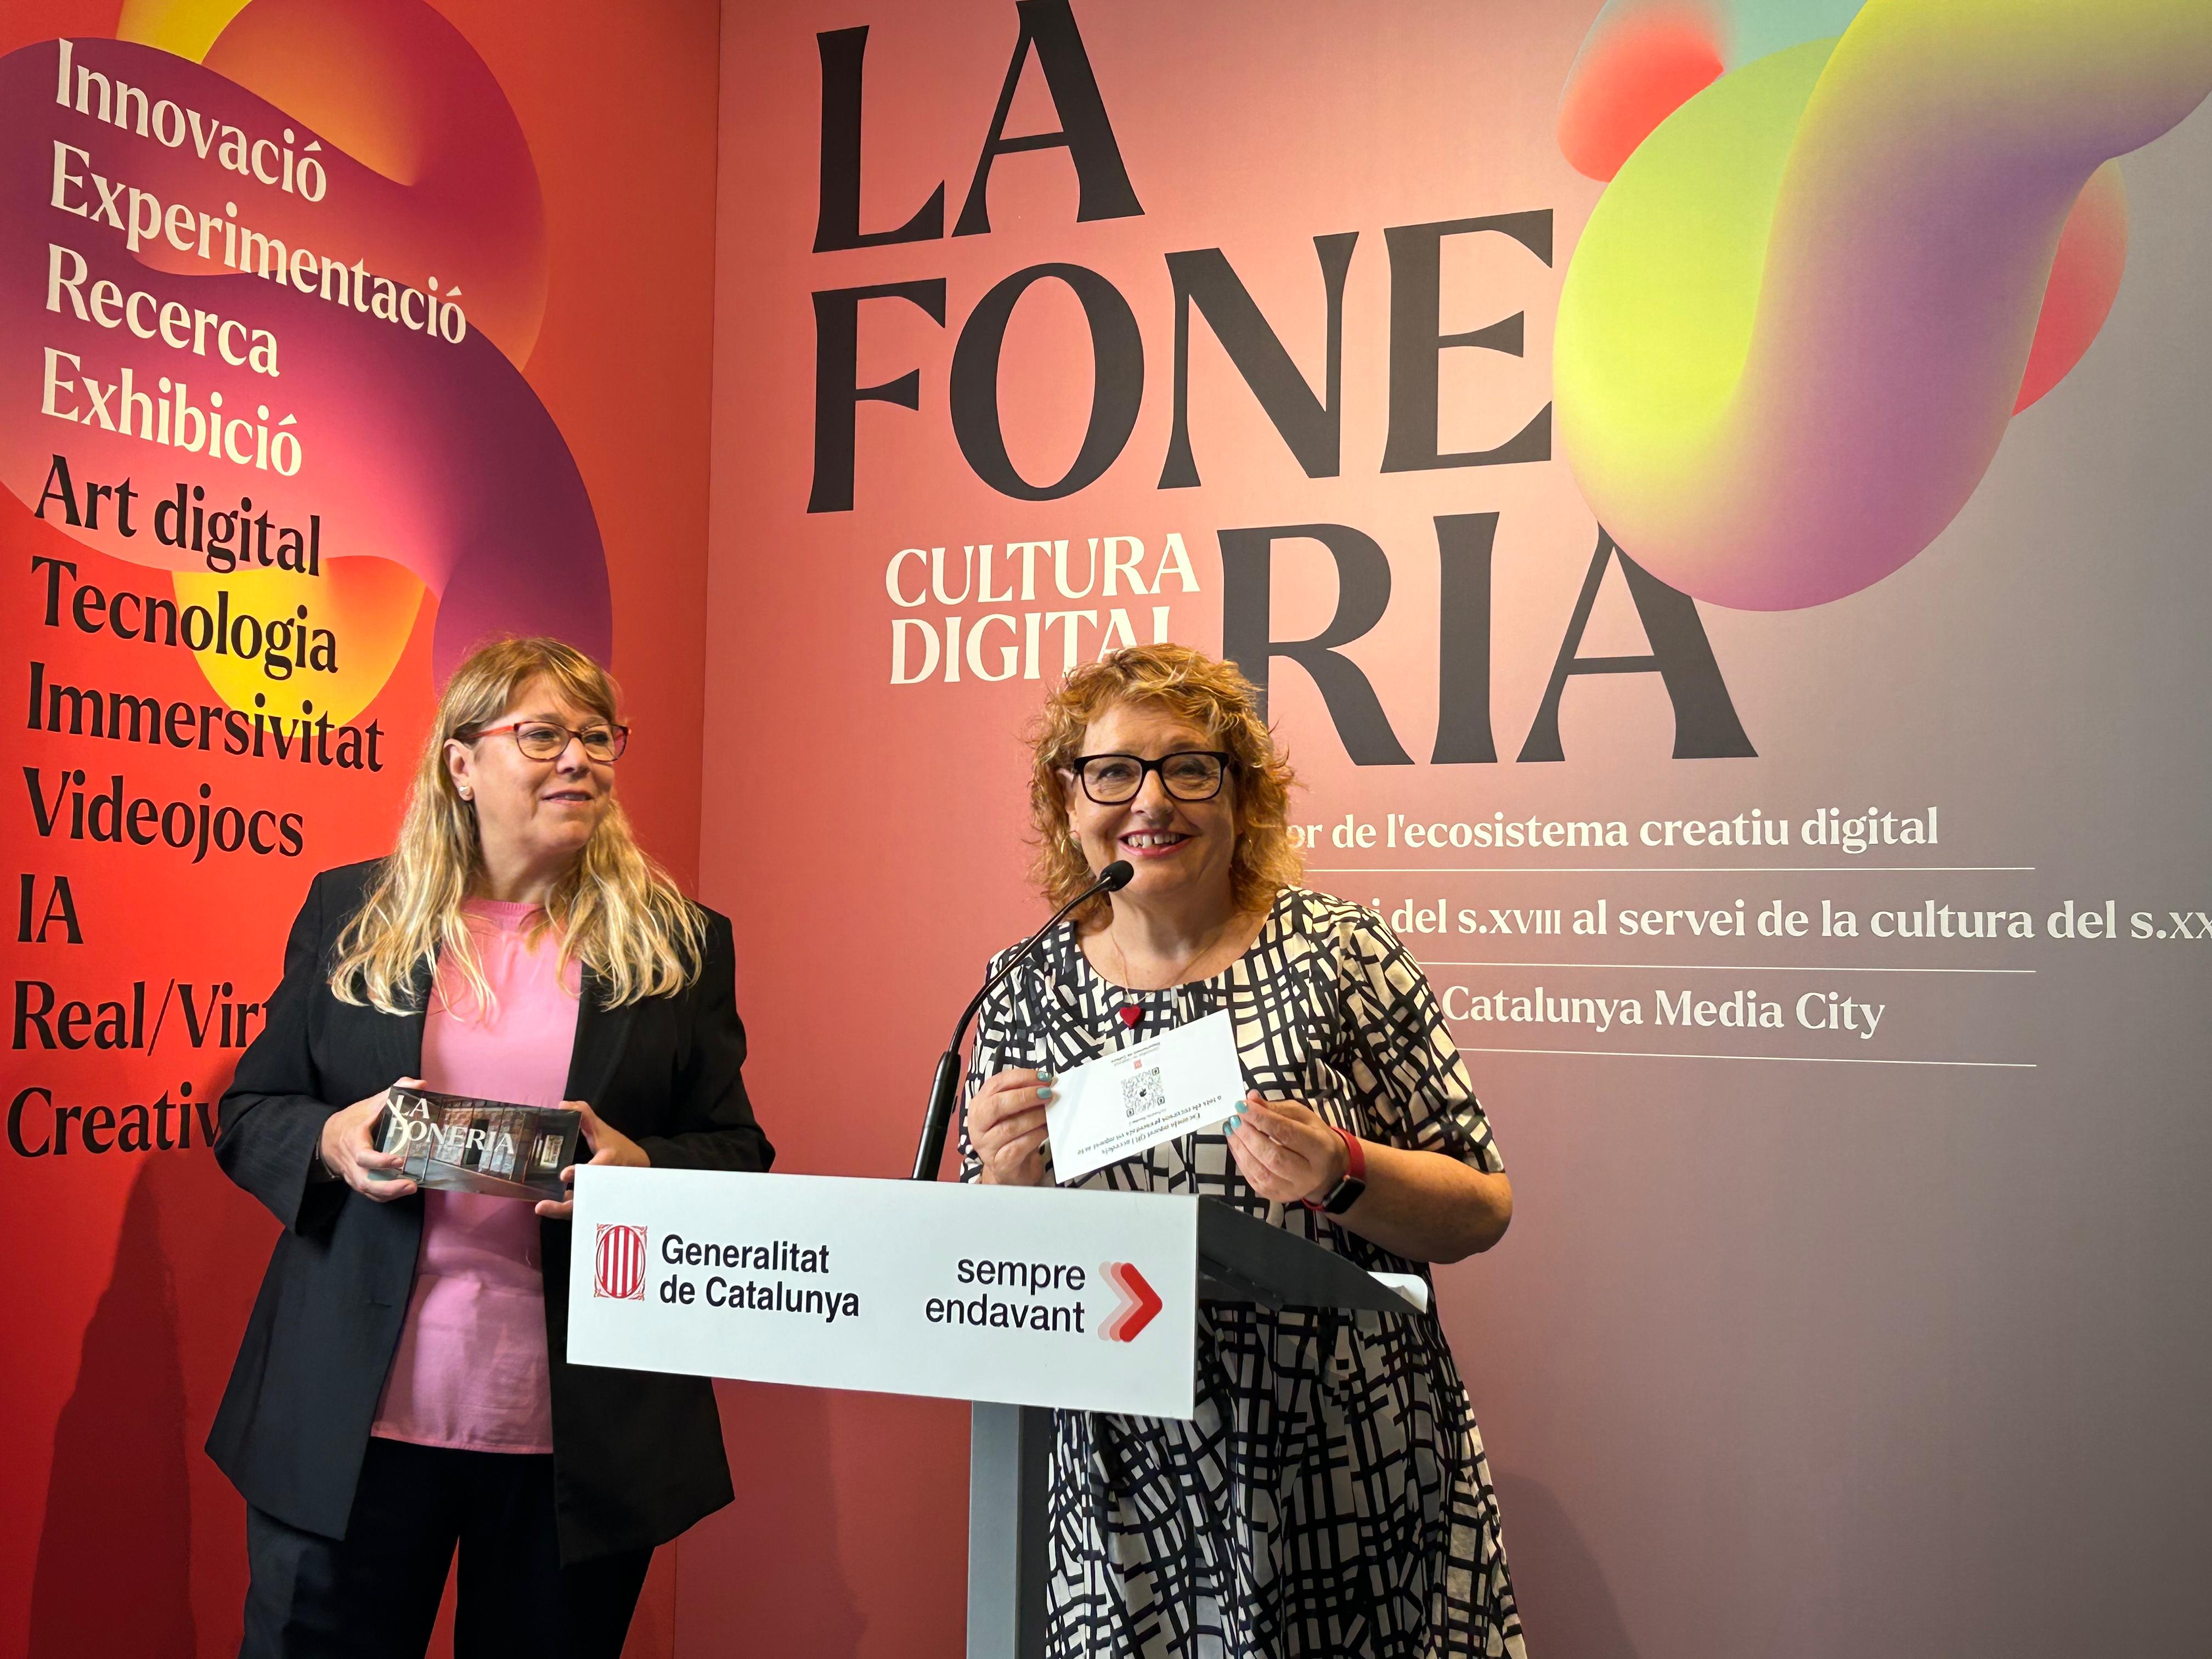 La consellera Natàlia Garriga i la directora general de Cultura Digital, Marisol López, presenten el projecte per a l'edifici de la Foneria de Canons de la Rambla. 